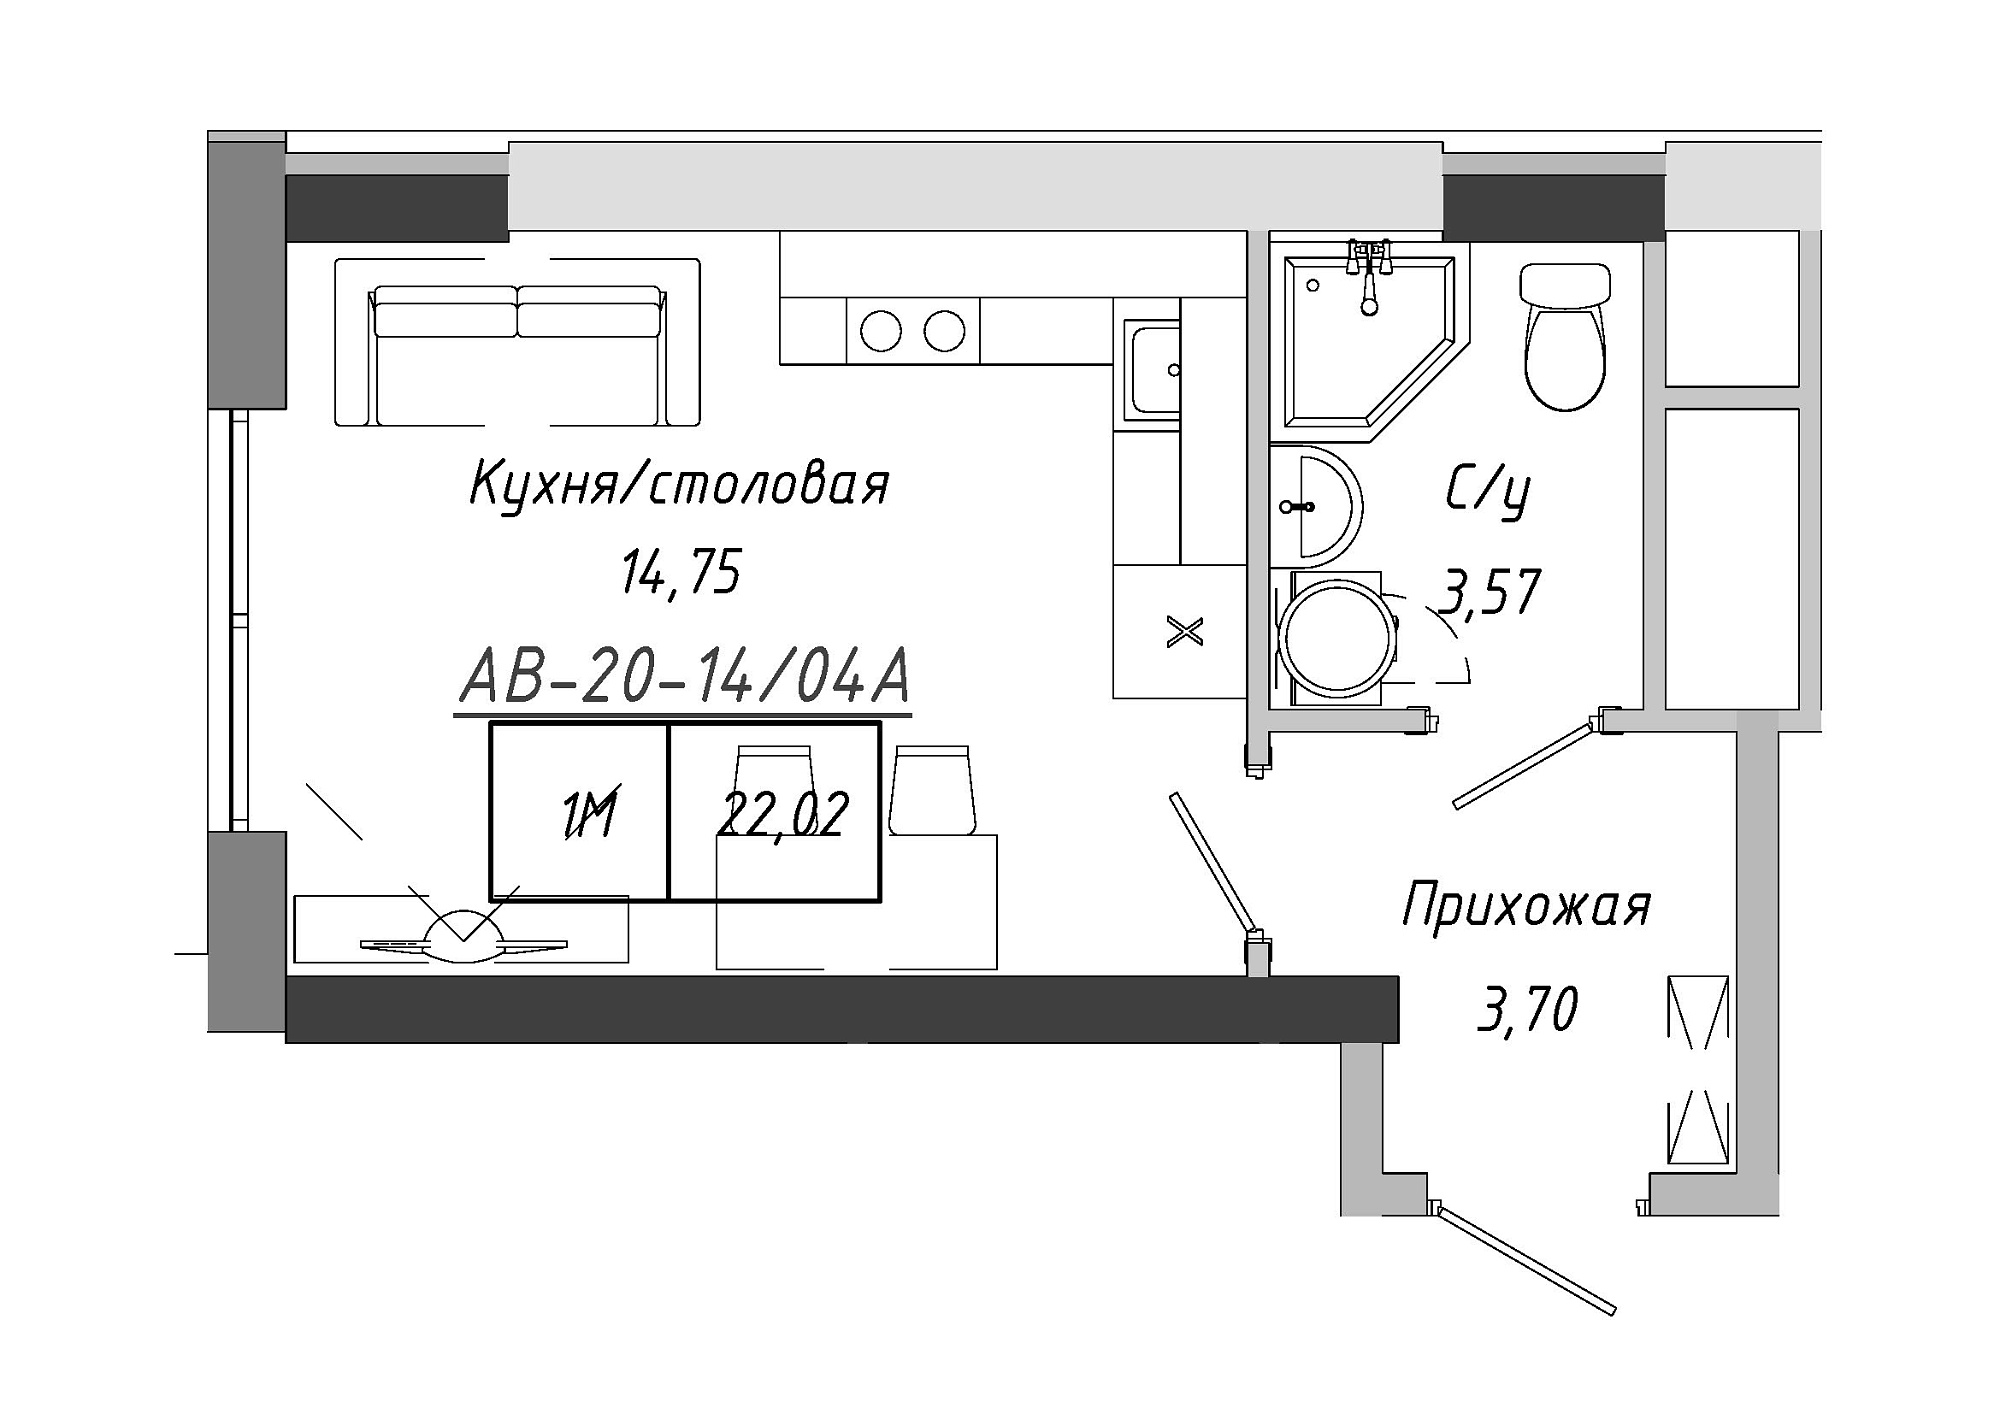 Планировка Smart-квартира площей 22.02м2, AB-20-14/0104a.